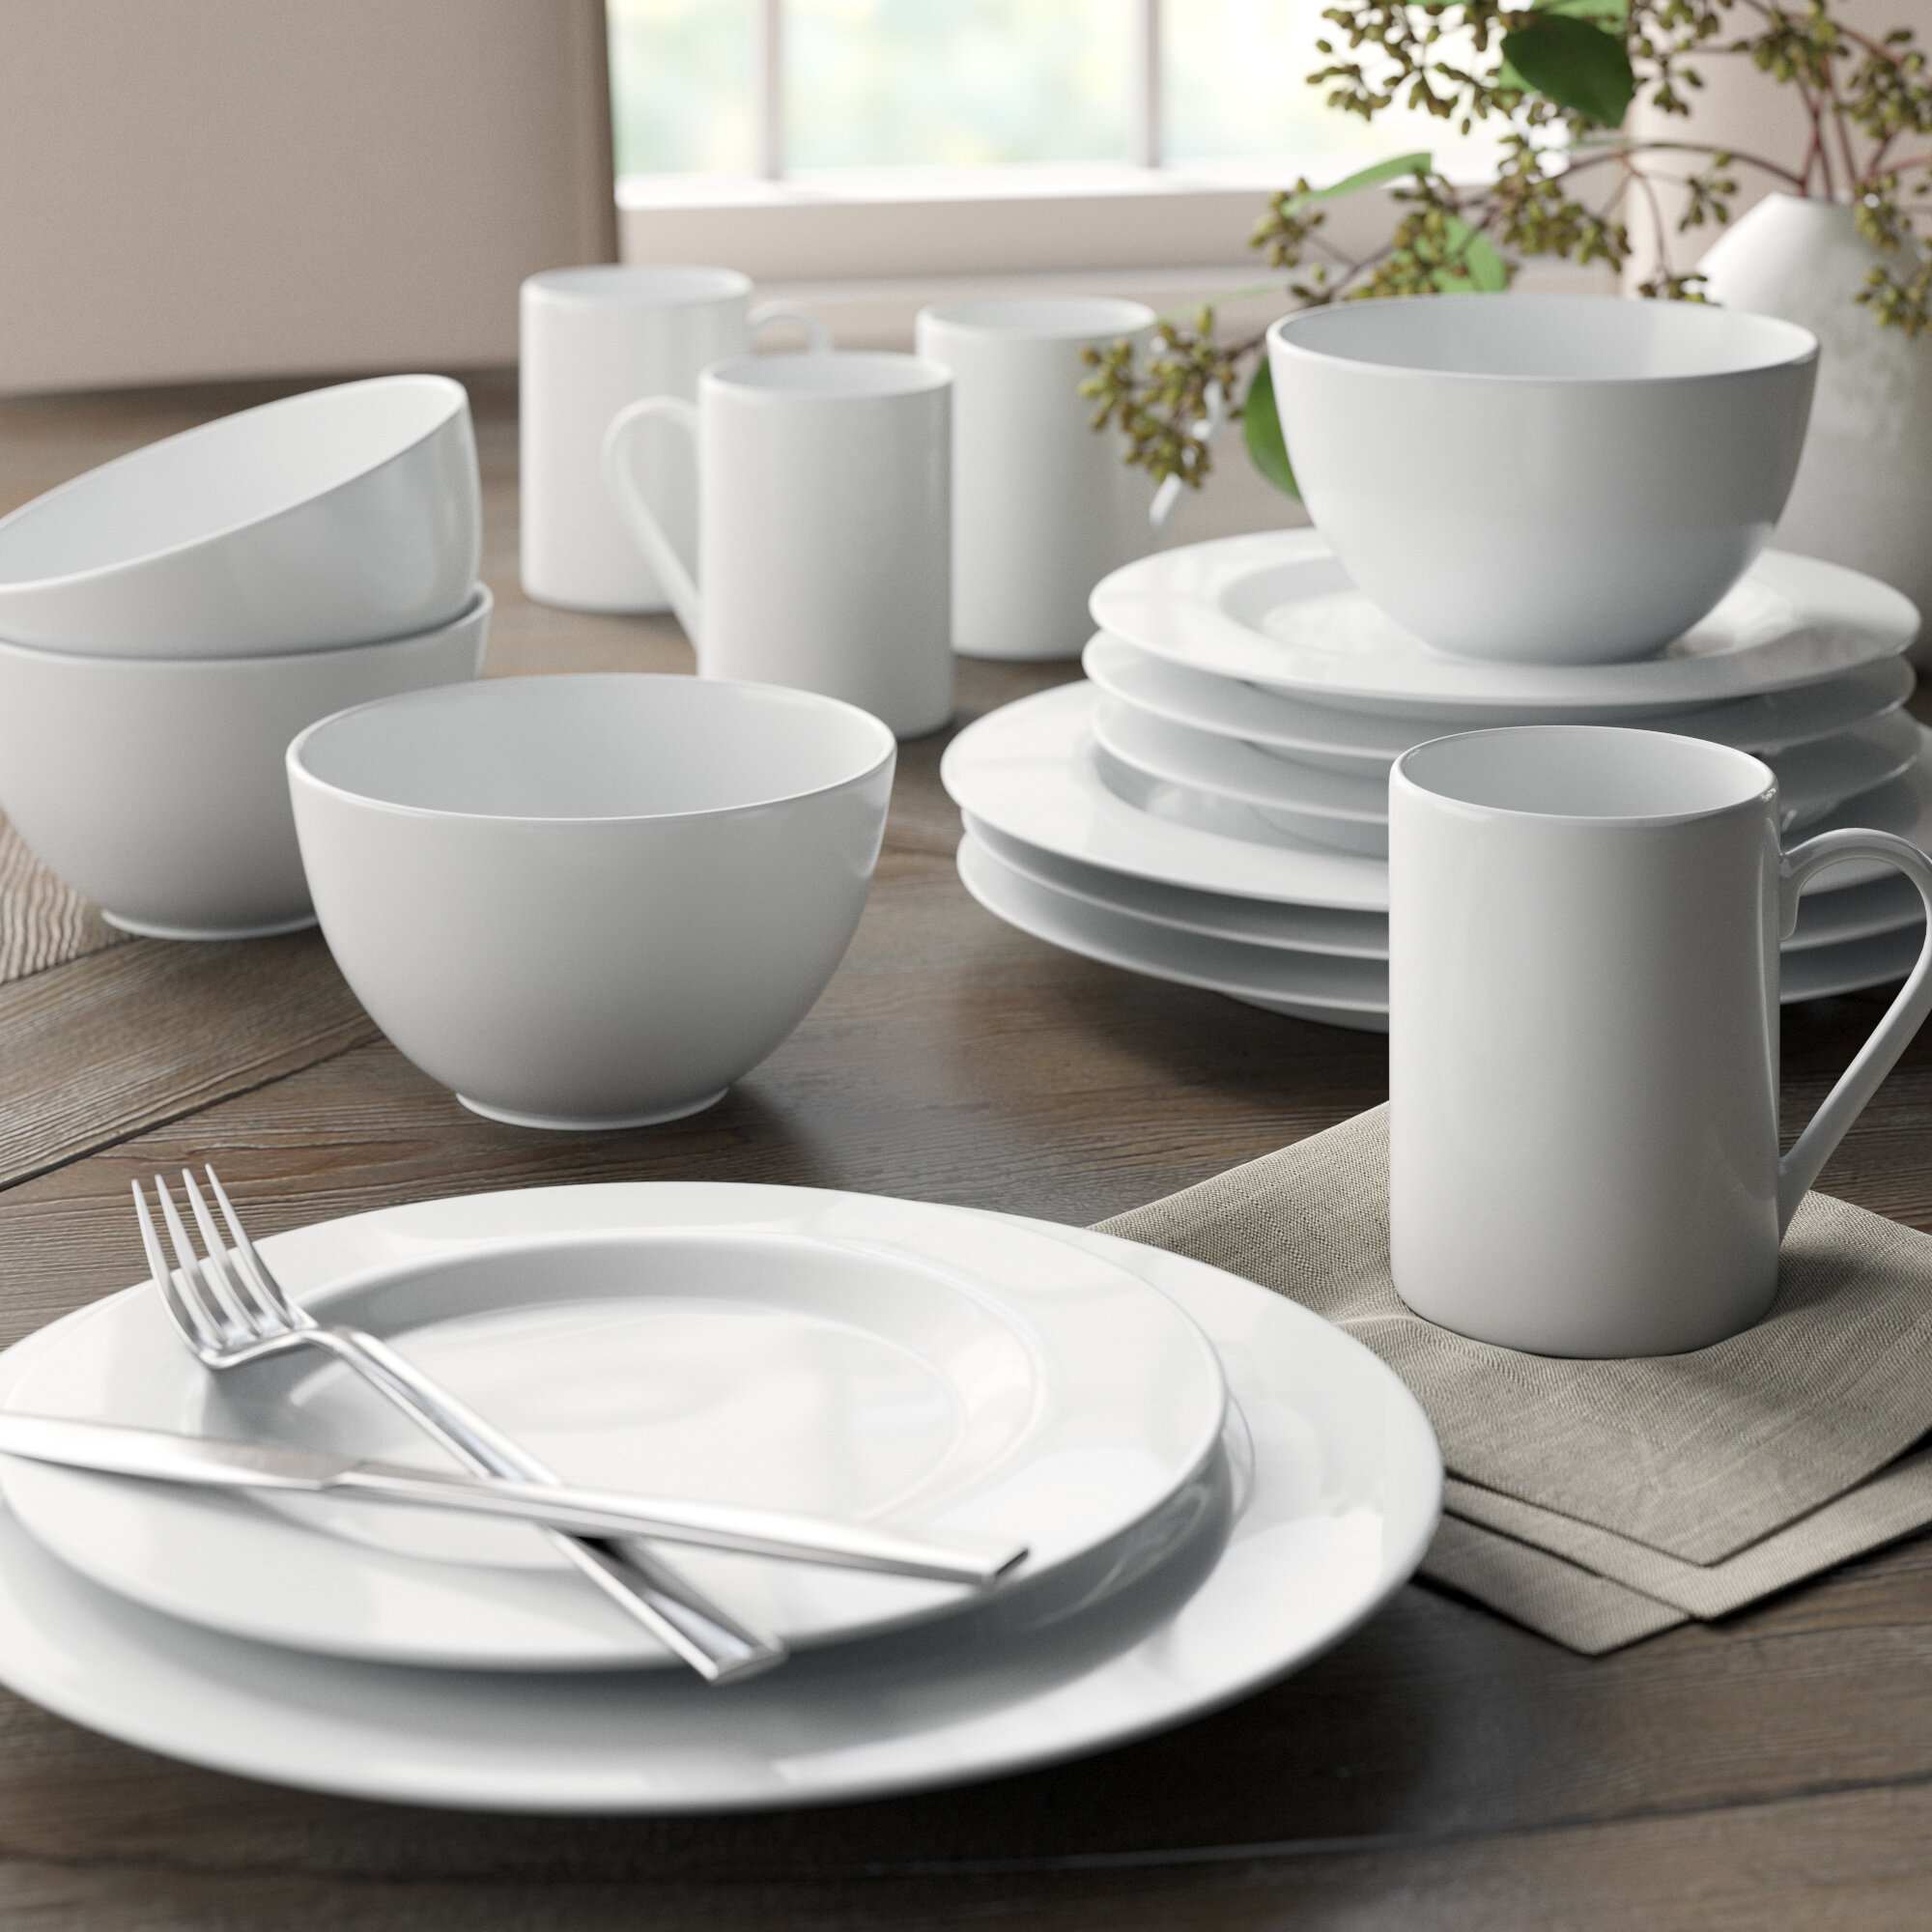 24 Piece Porcelain Crockery Dinner Dining Set Plates Mugs Bowls Set for 6 Pink